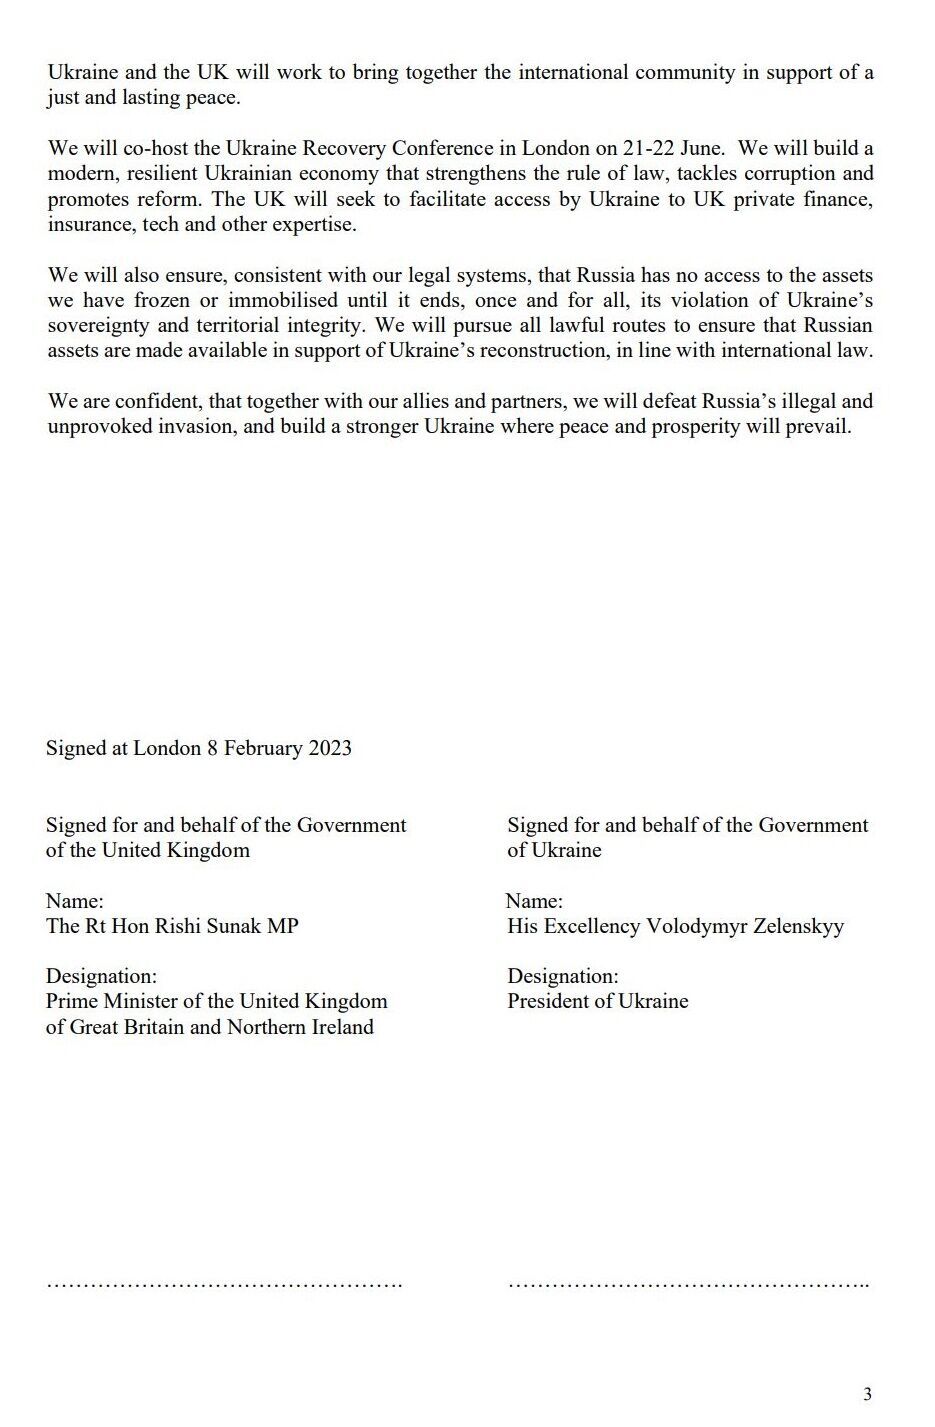 ''Разом побудуємо сильну Україну'': що передбачає Лондонська декларація, підписана Зеленським і Сунаком